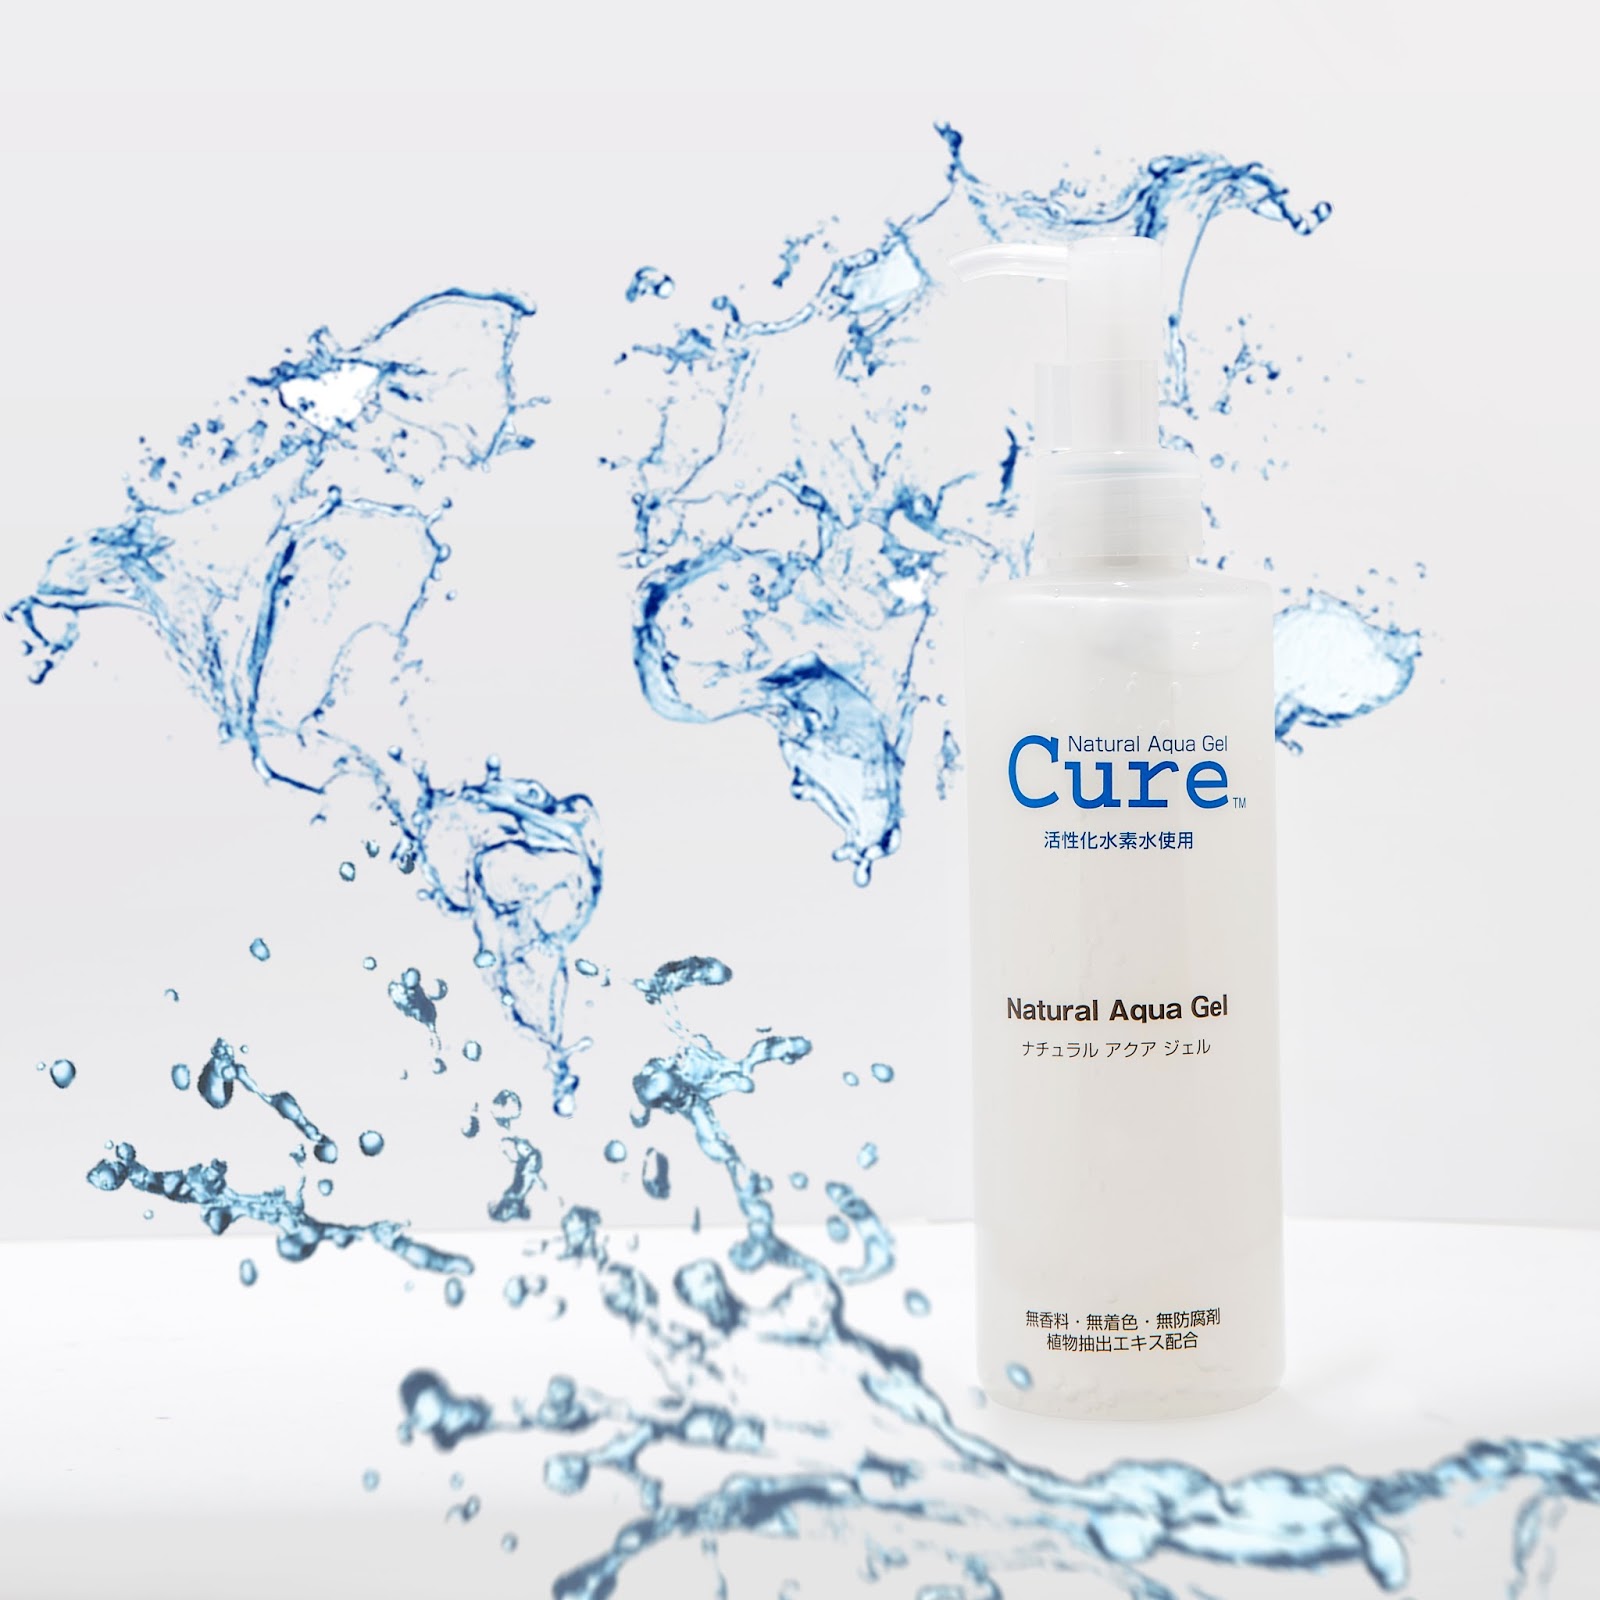 Cure natural Aqua Gel. Cure пилинг. Cure Aqua Gel для лица Япония. Natural Aqua Gel Cure фирма чья. Aqua gel отзывы